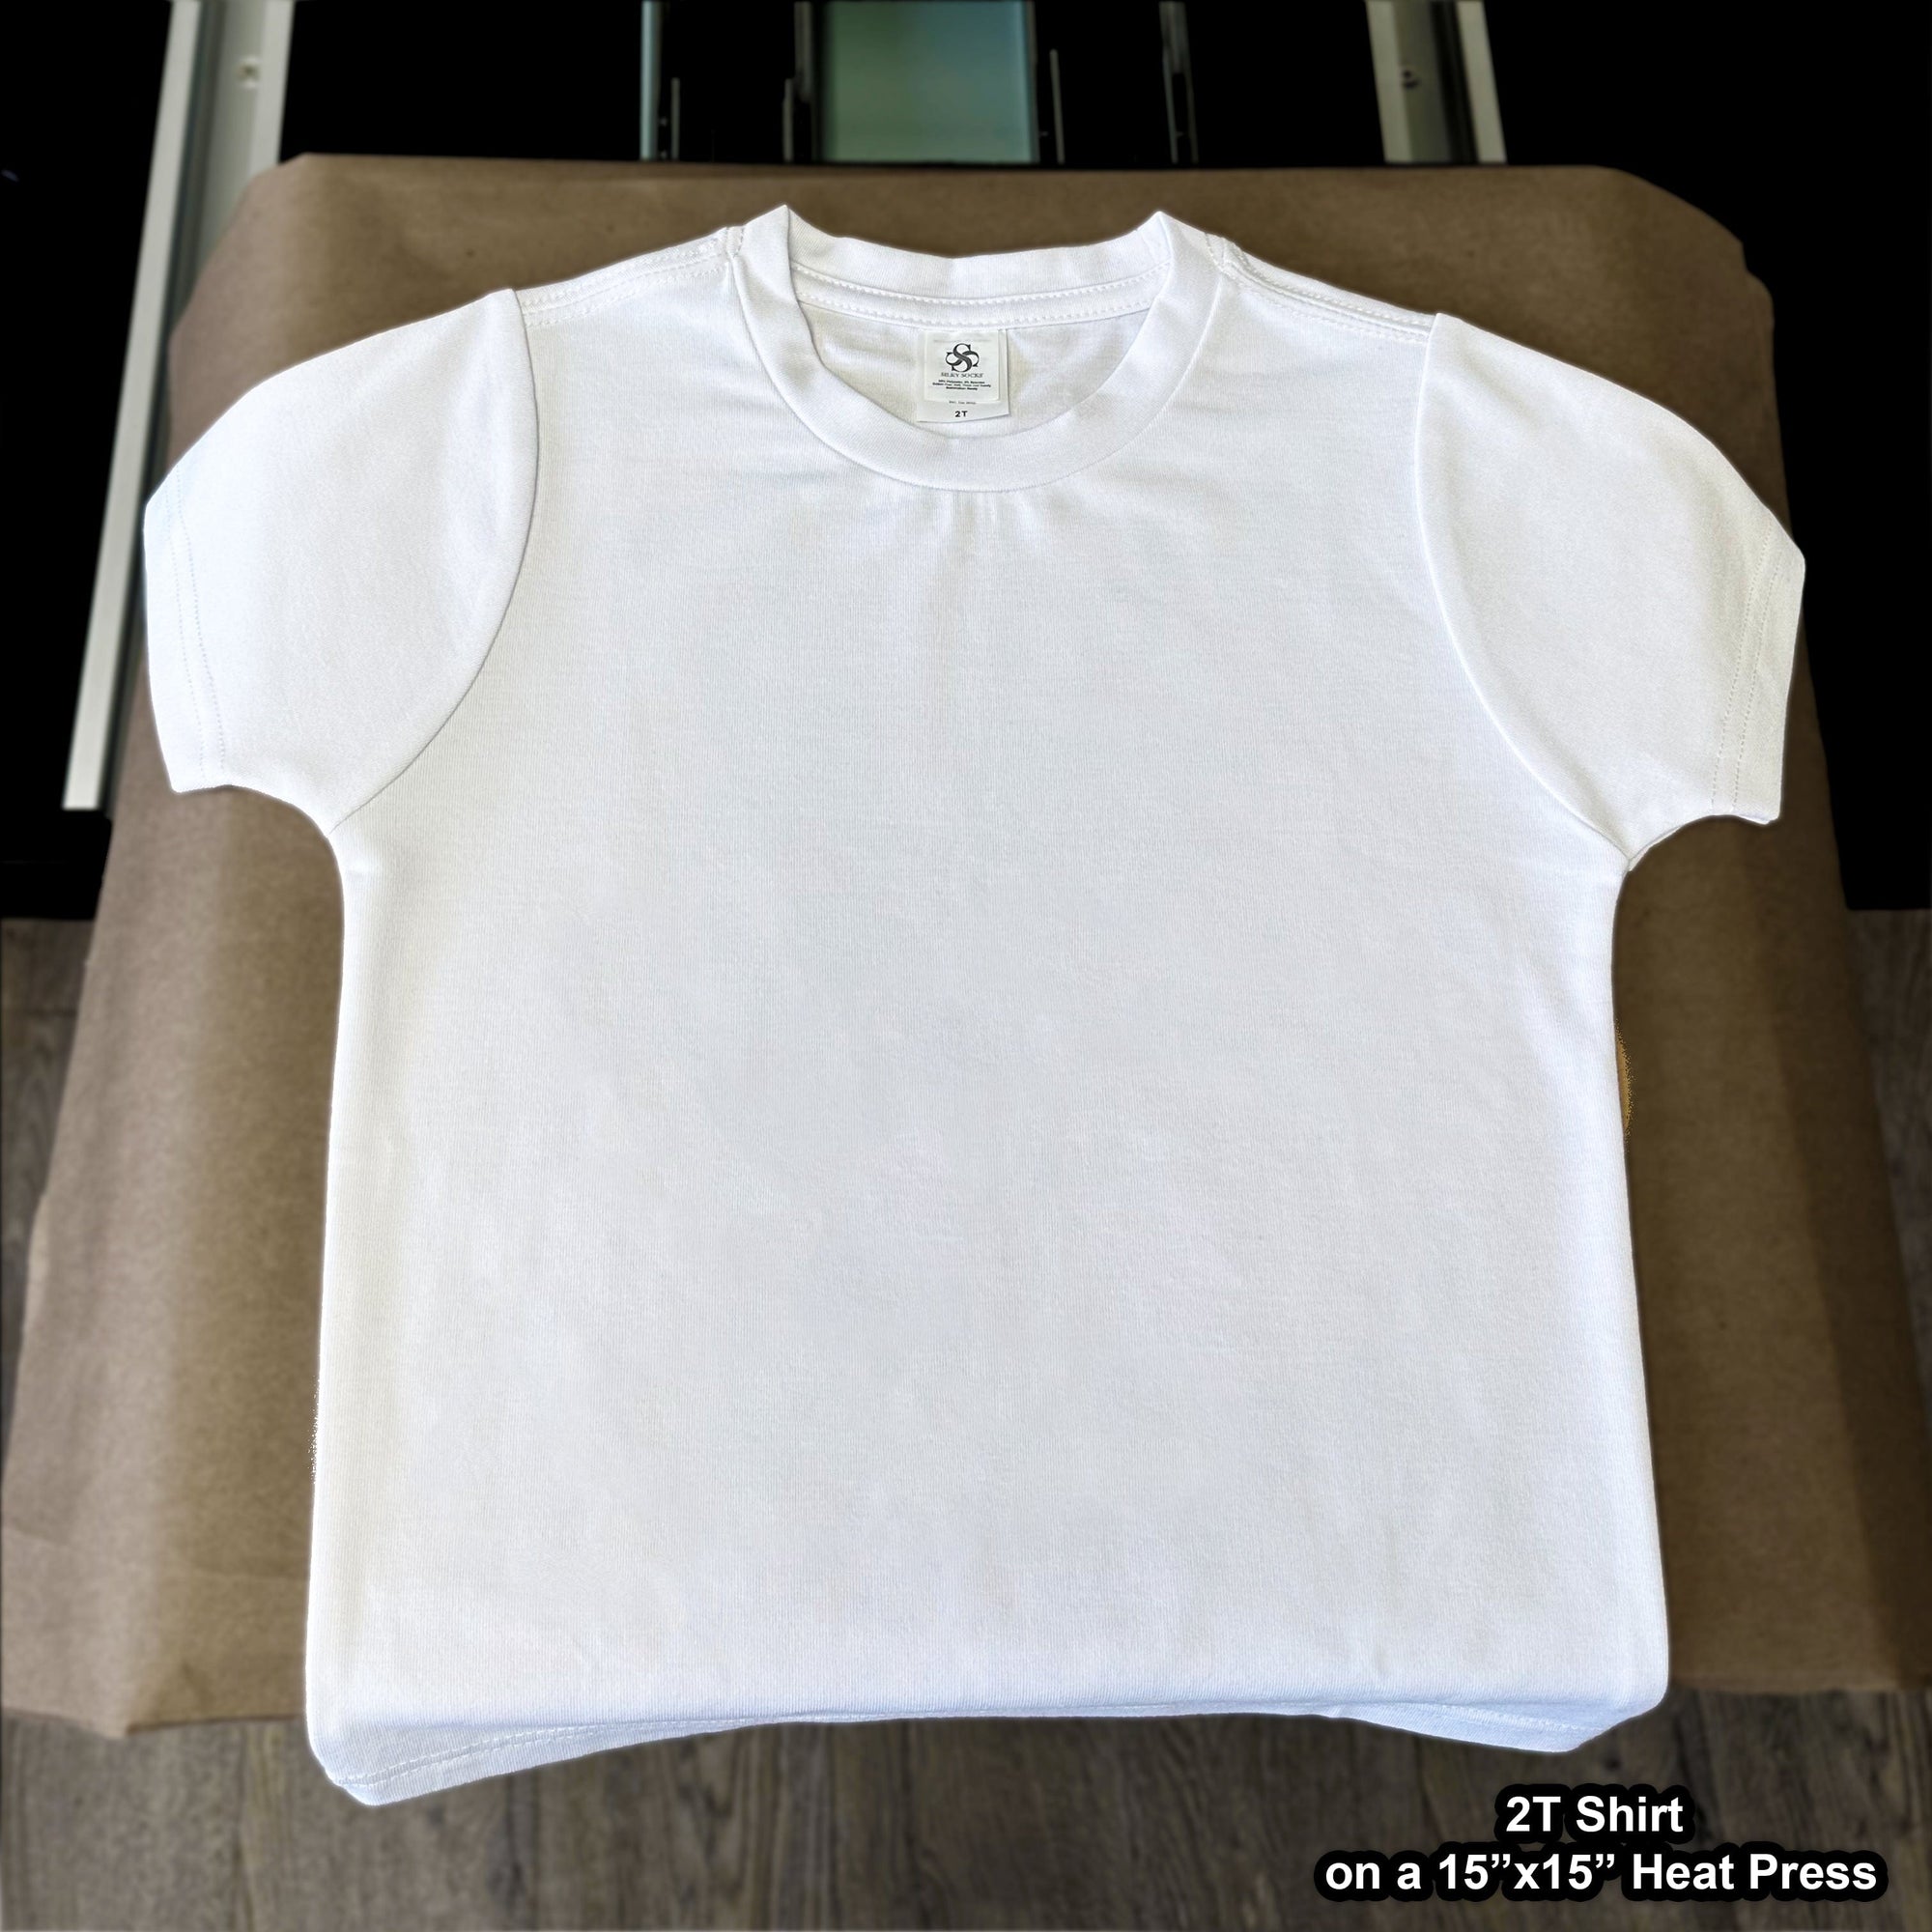 White T-Shirt - Toddler